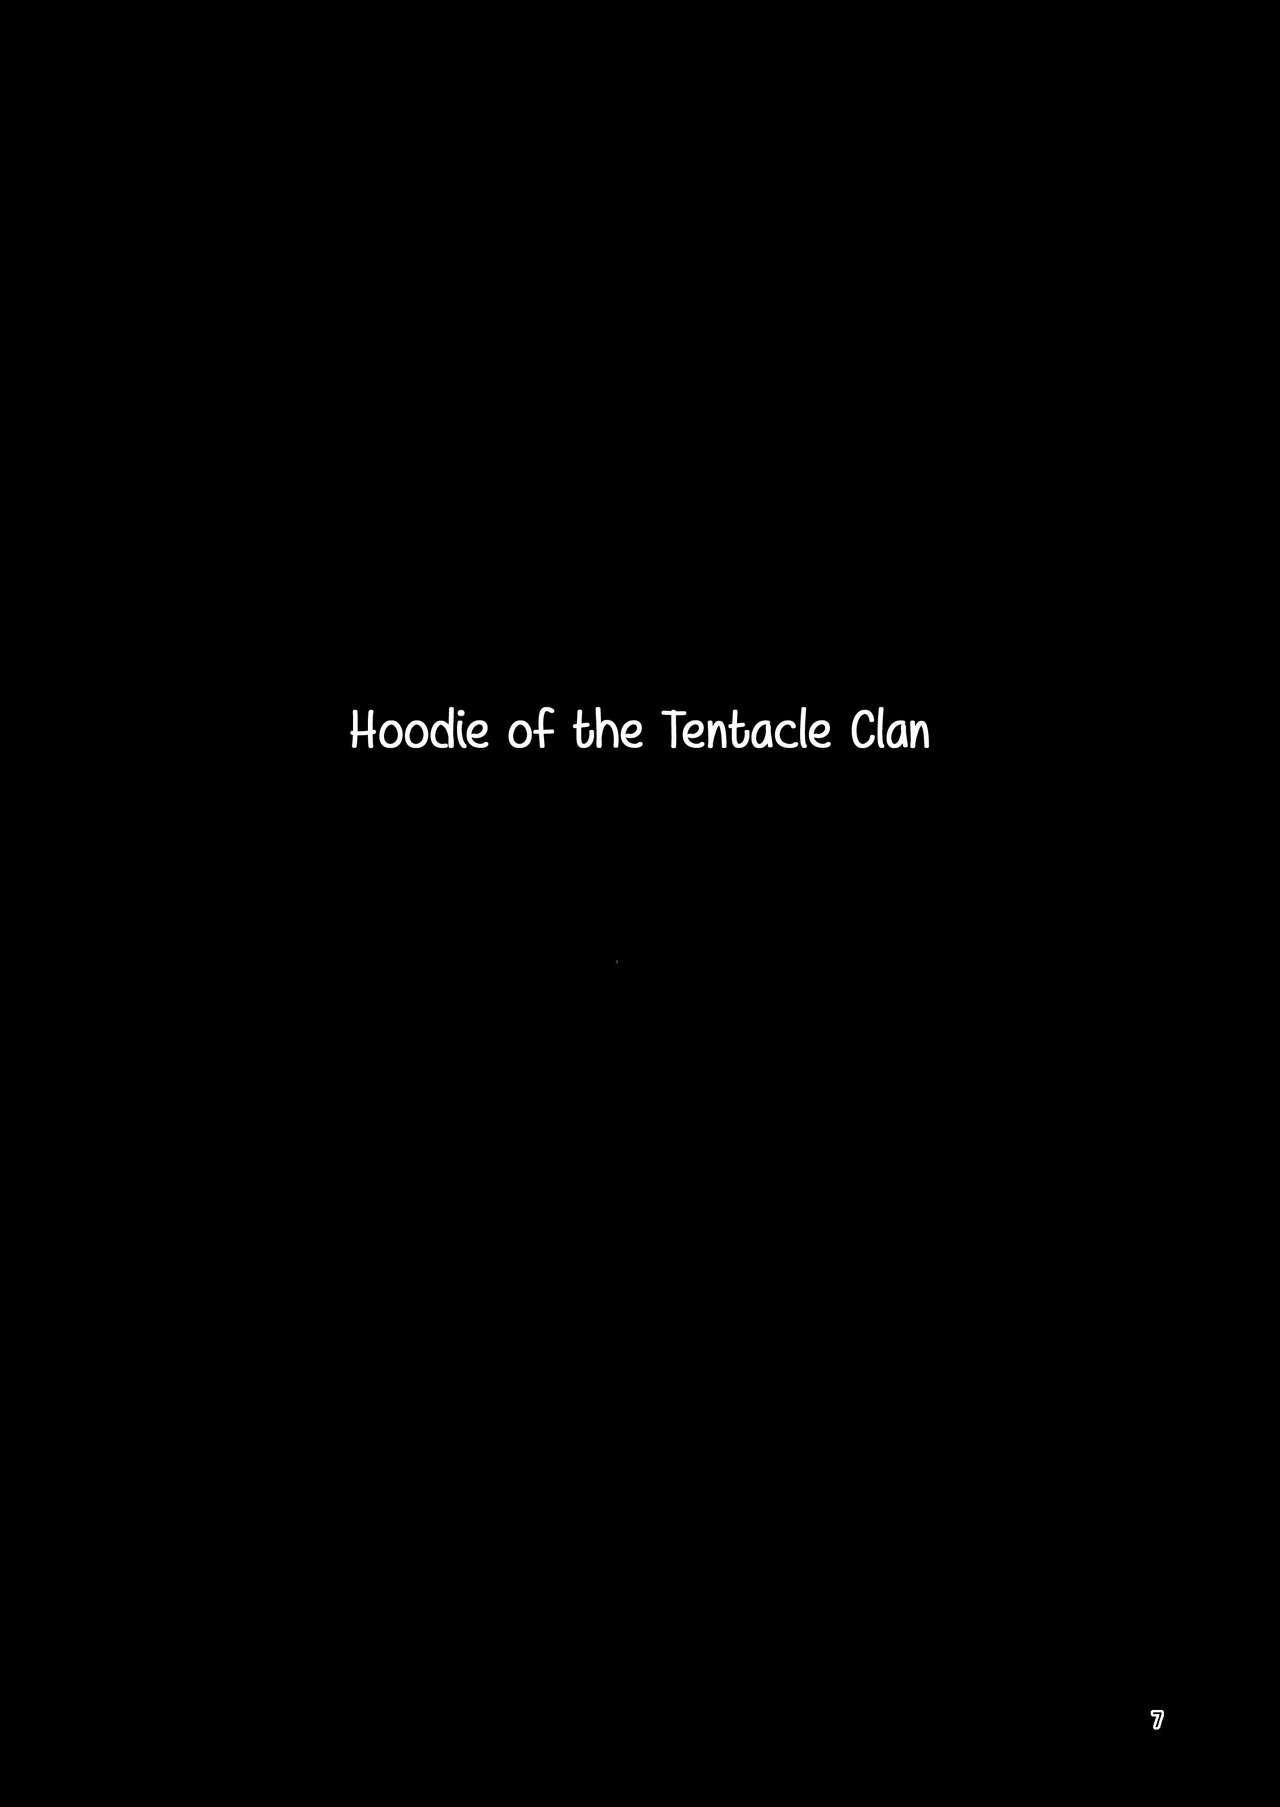 Hetero Hoodie of the Tentacle Tribe - Original Hooker - Page 7